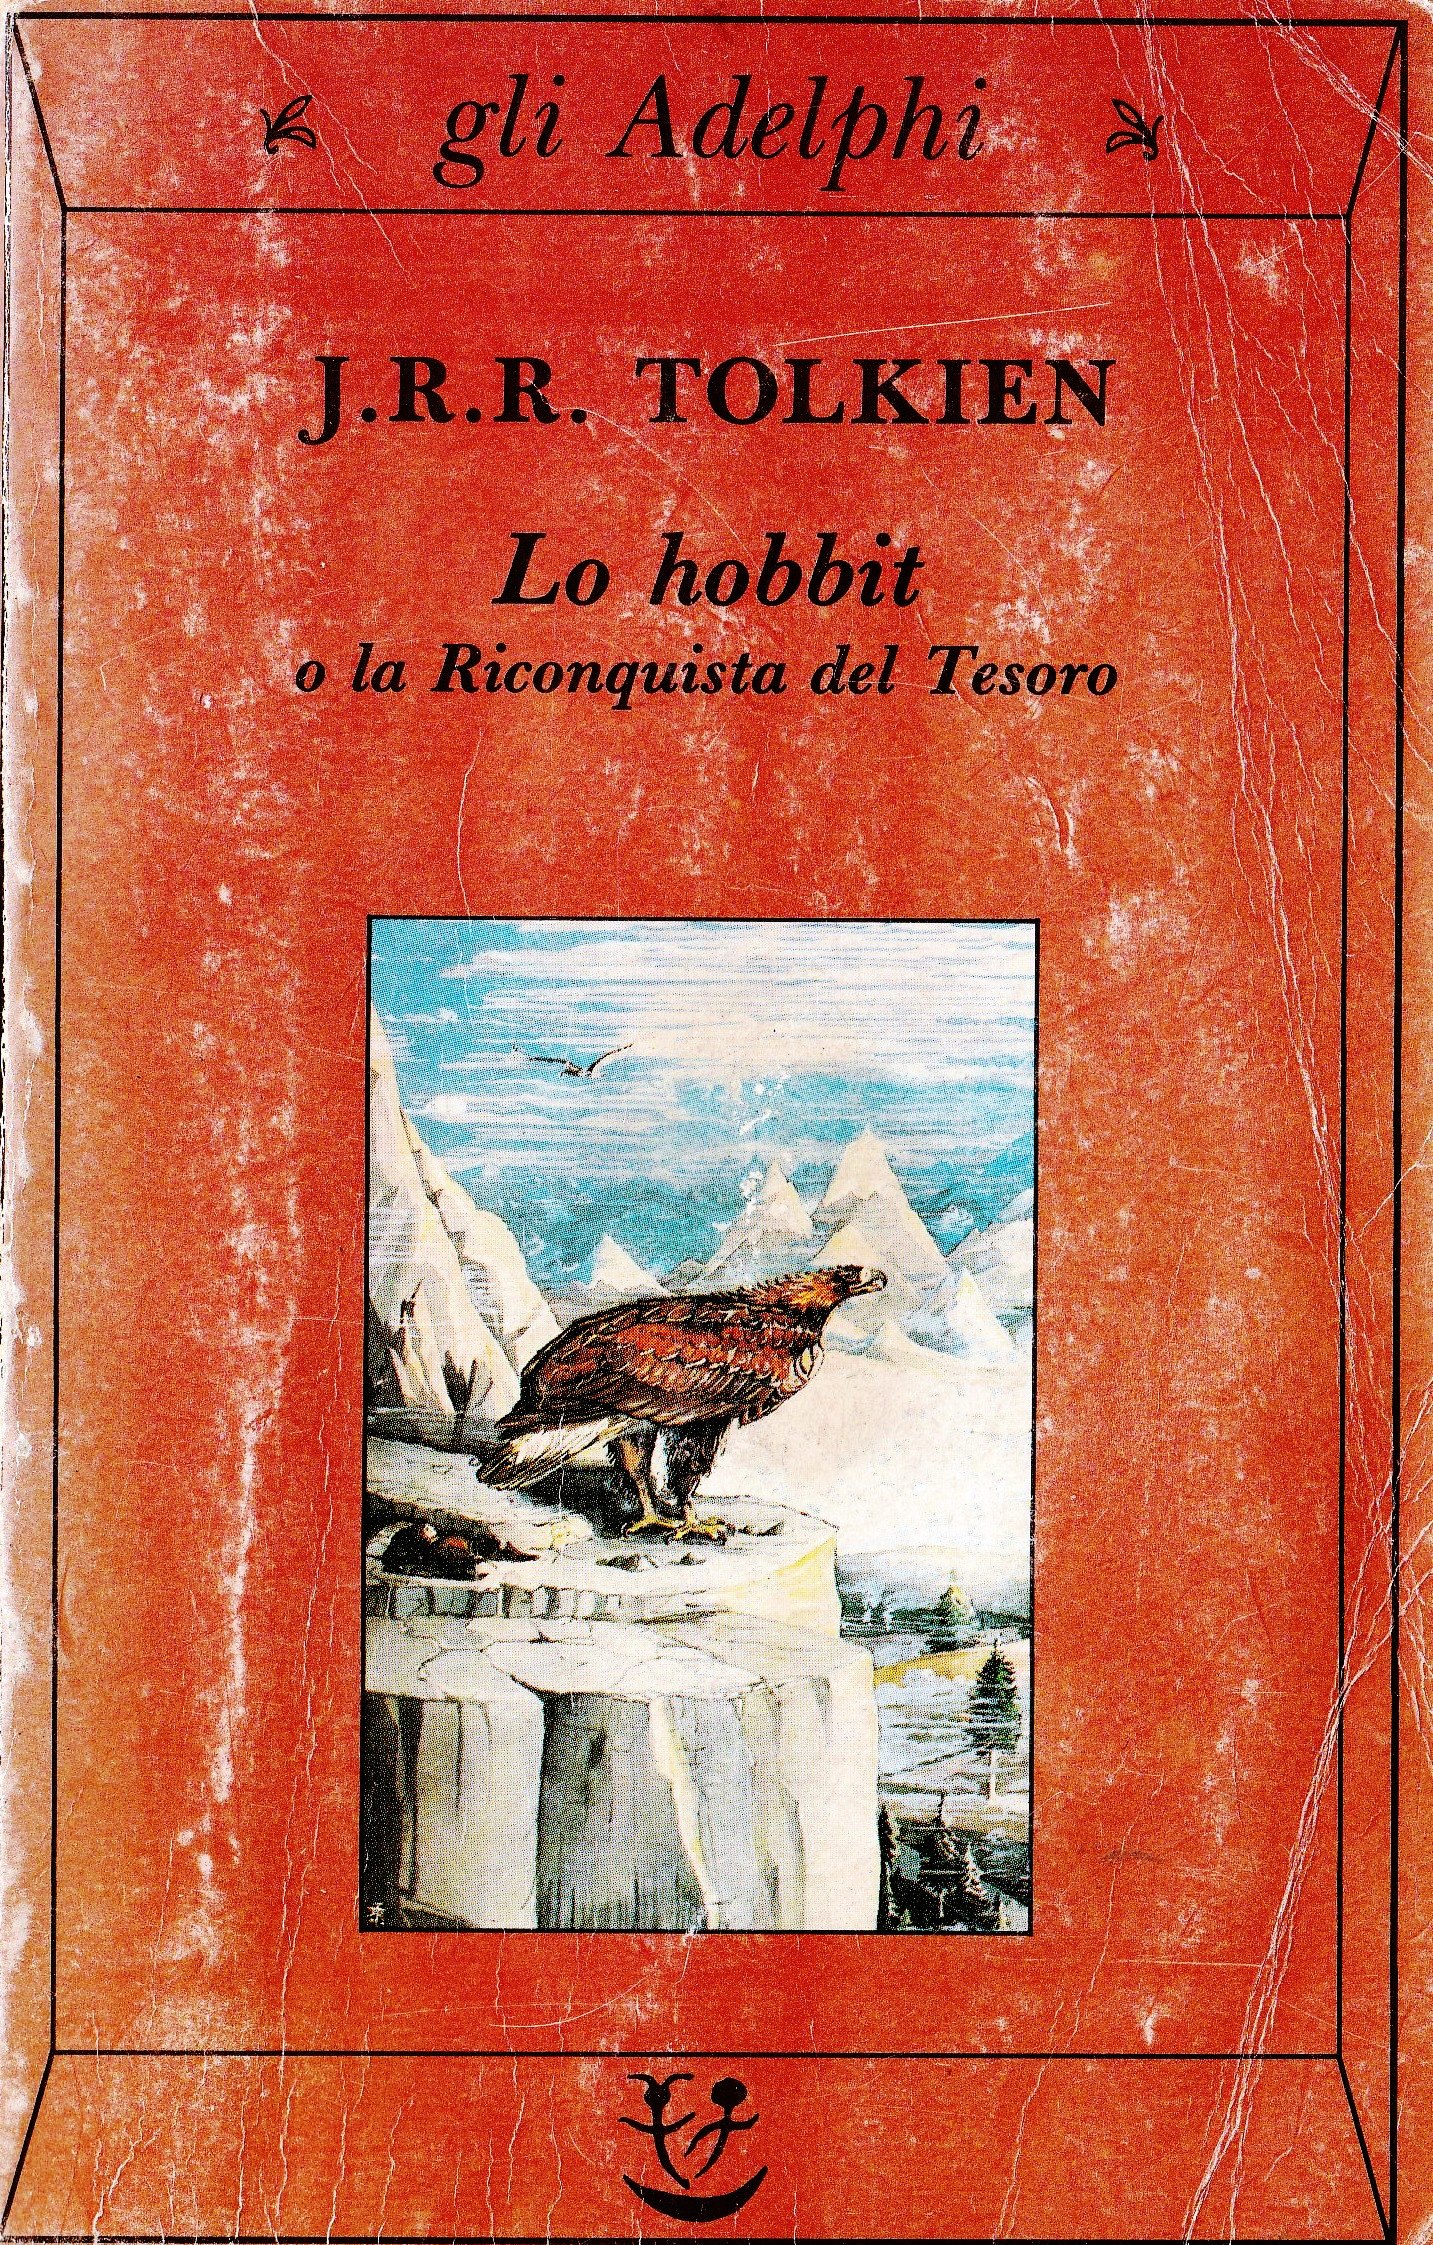 John Ronald Reuel Tolkien: LO HOBBIT E LA RICONQUISTA DEL TESORO.  Traduzione di Elena Jeronimidis Conte. – Biblioteca Liceo Gullace Talotta